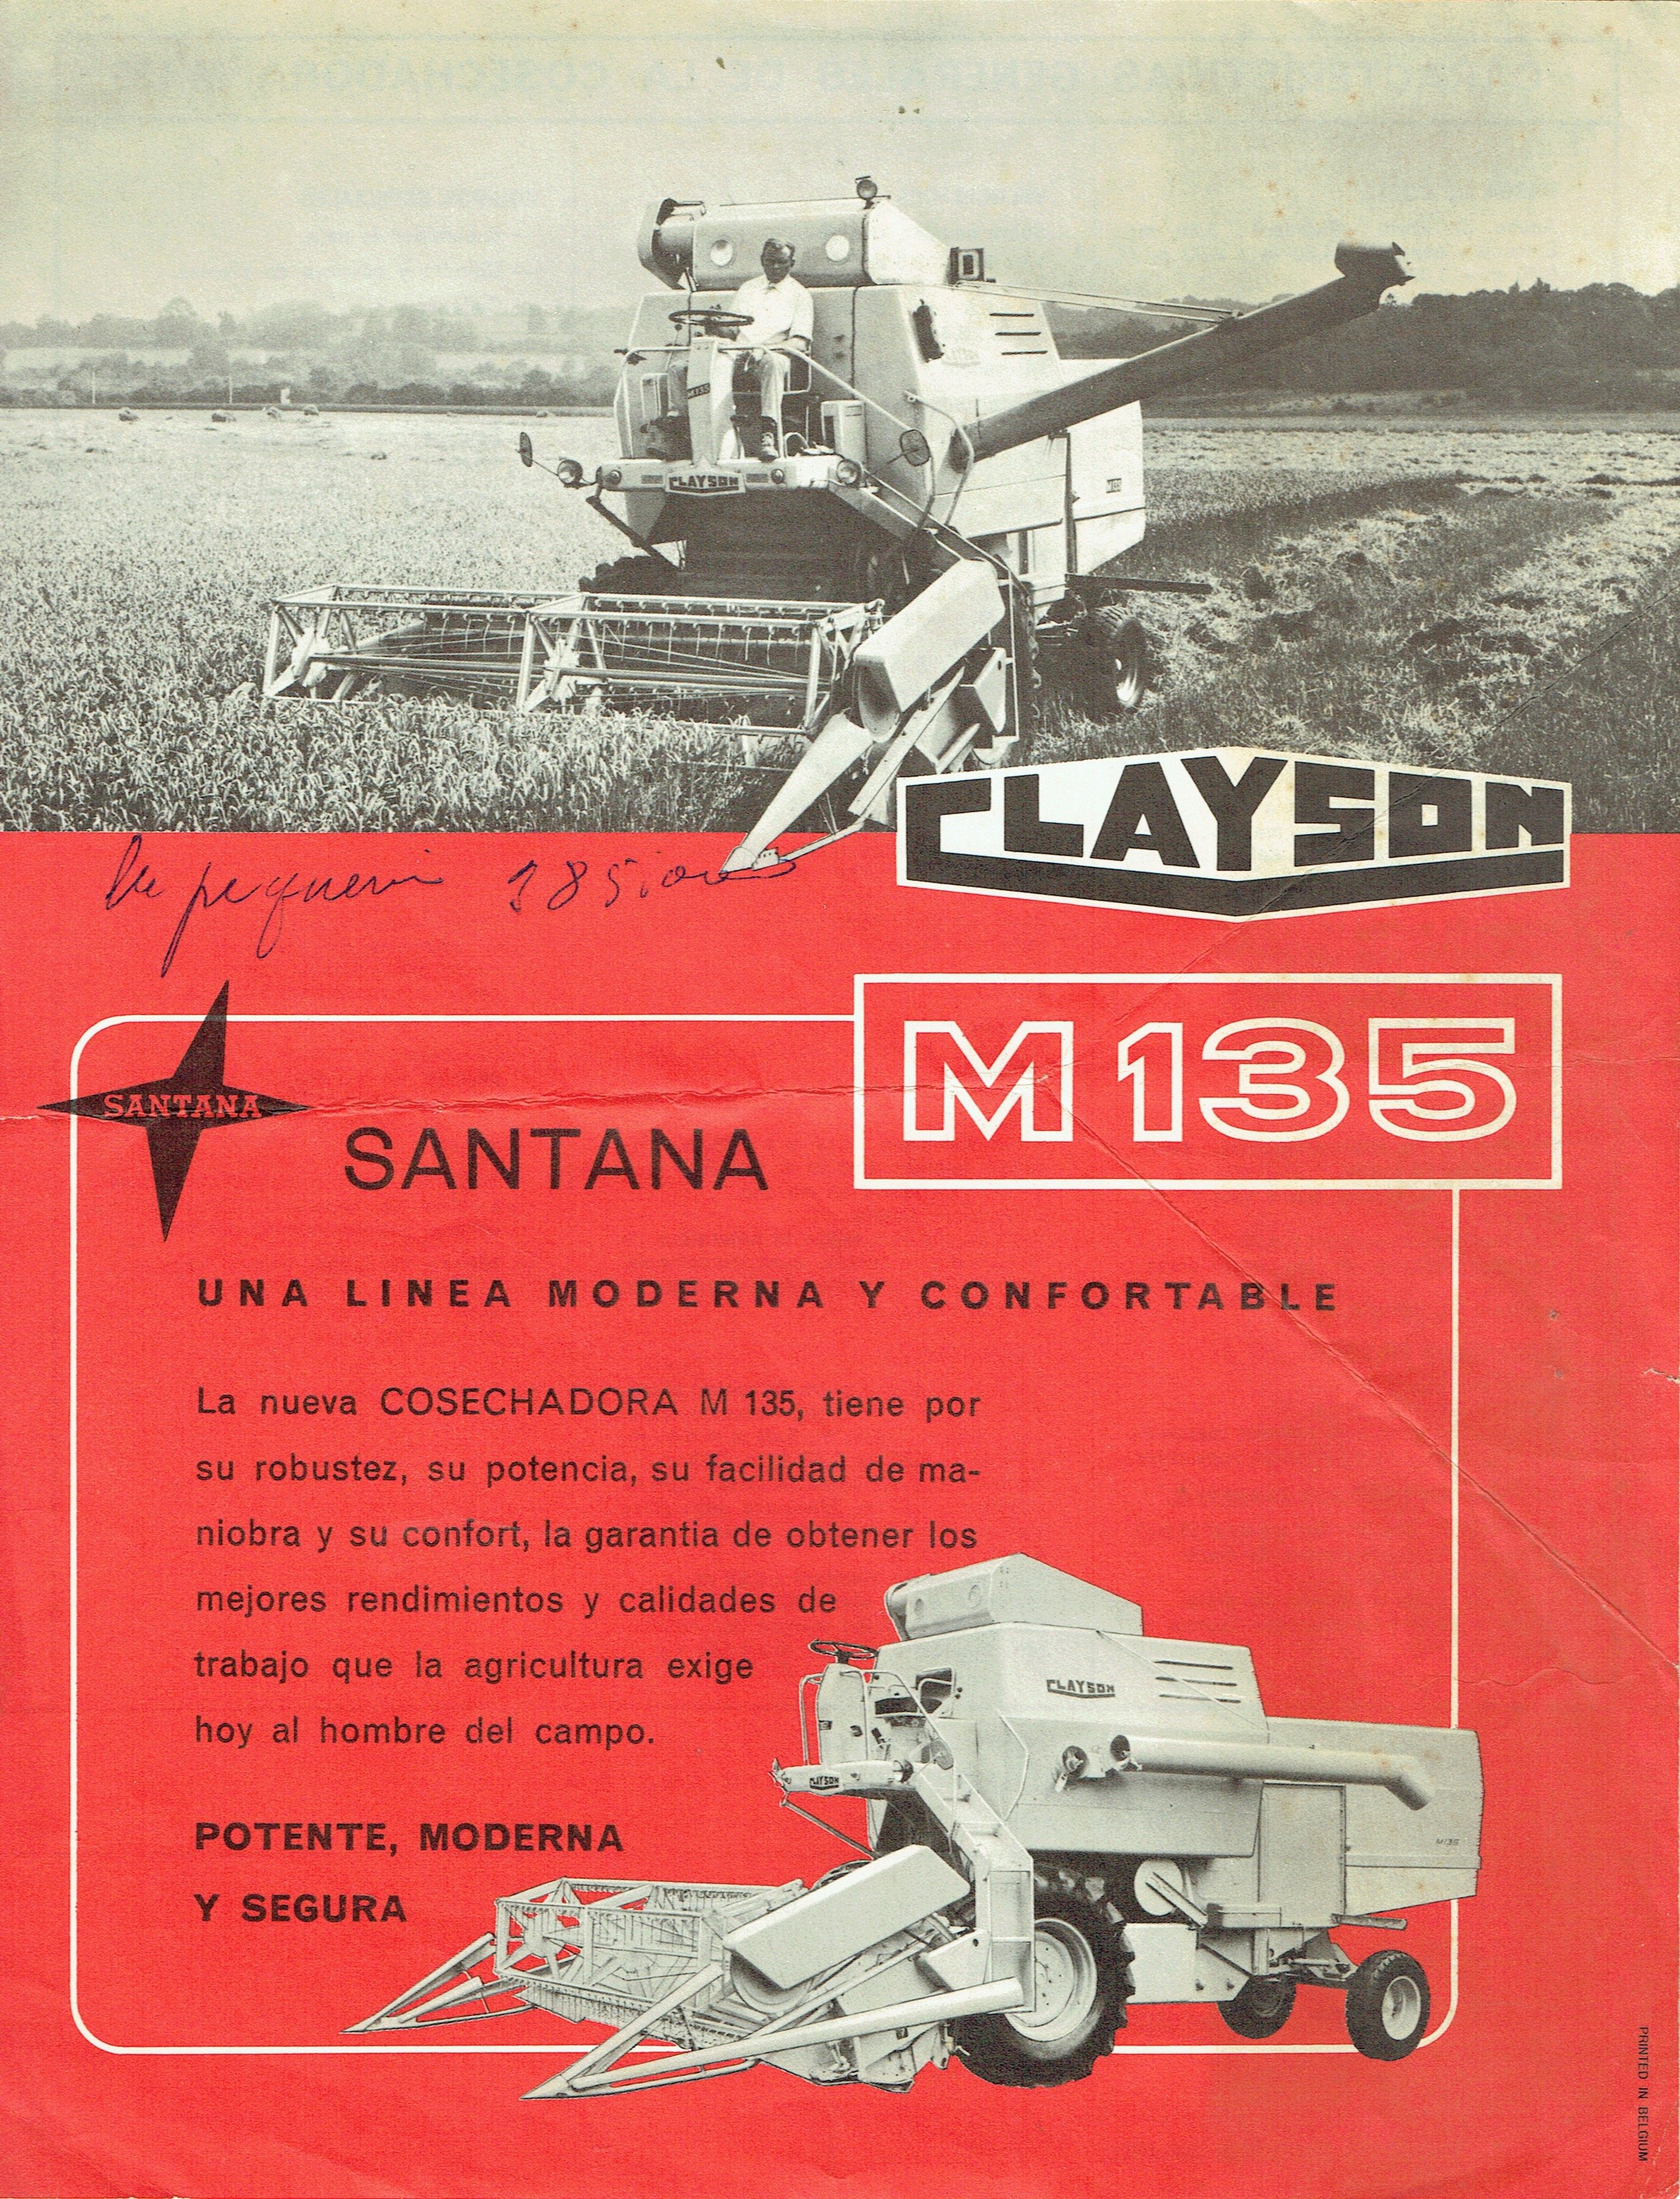 Santana/Clayson M135 (Metalurgica de Santa Ana S.A. CC BY-NC)